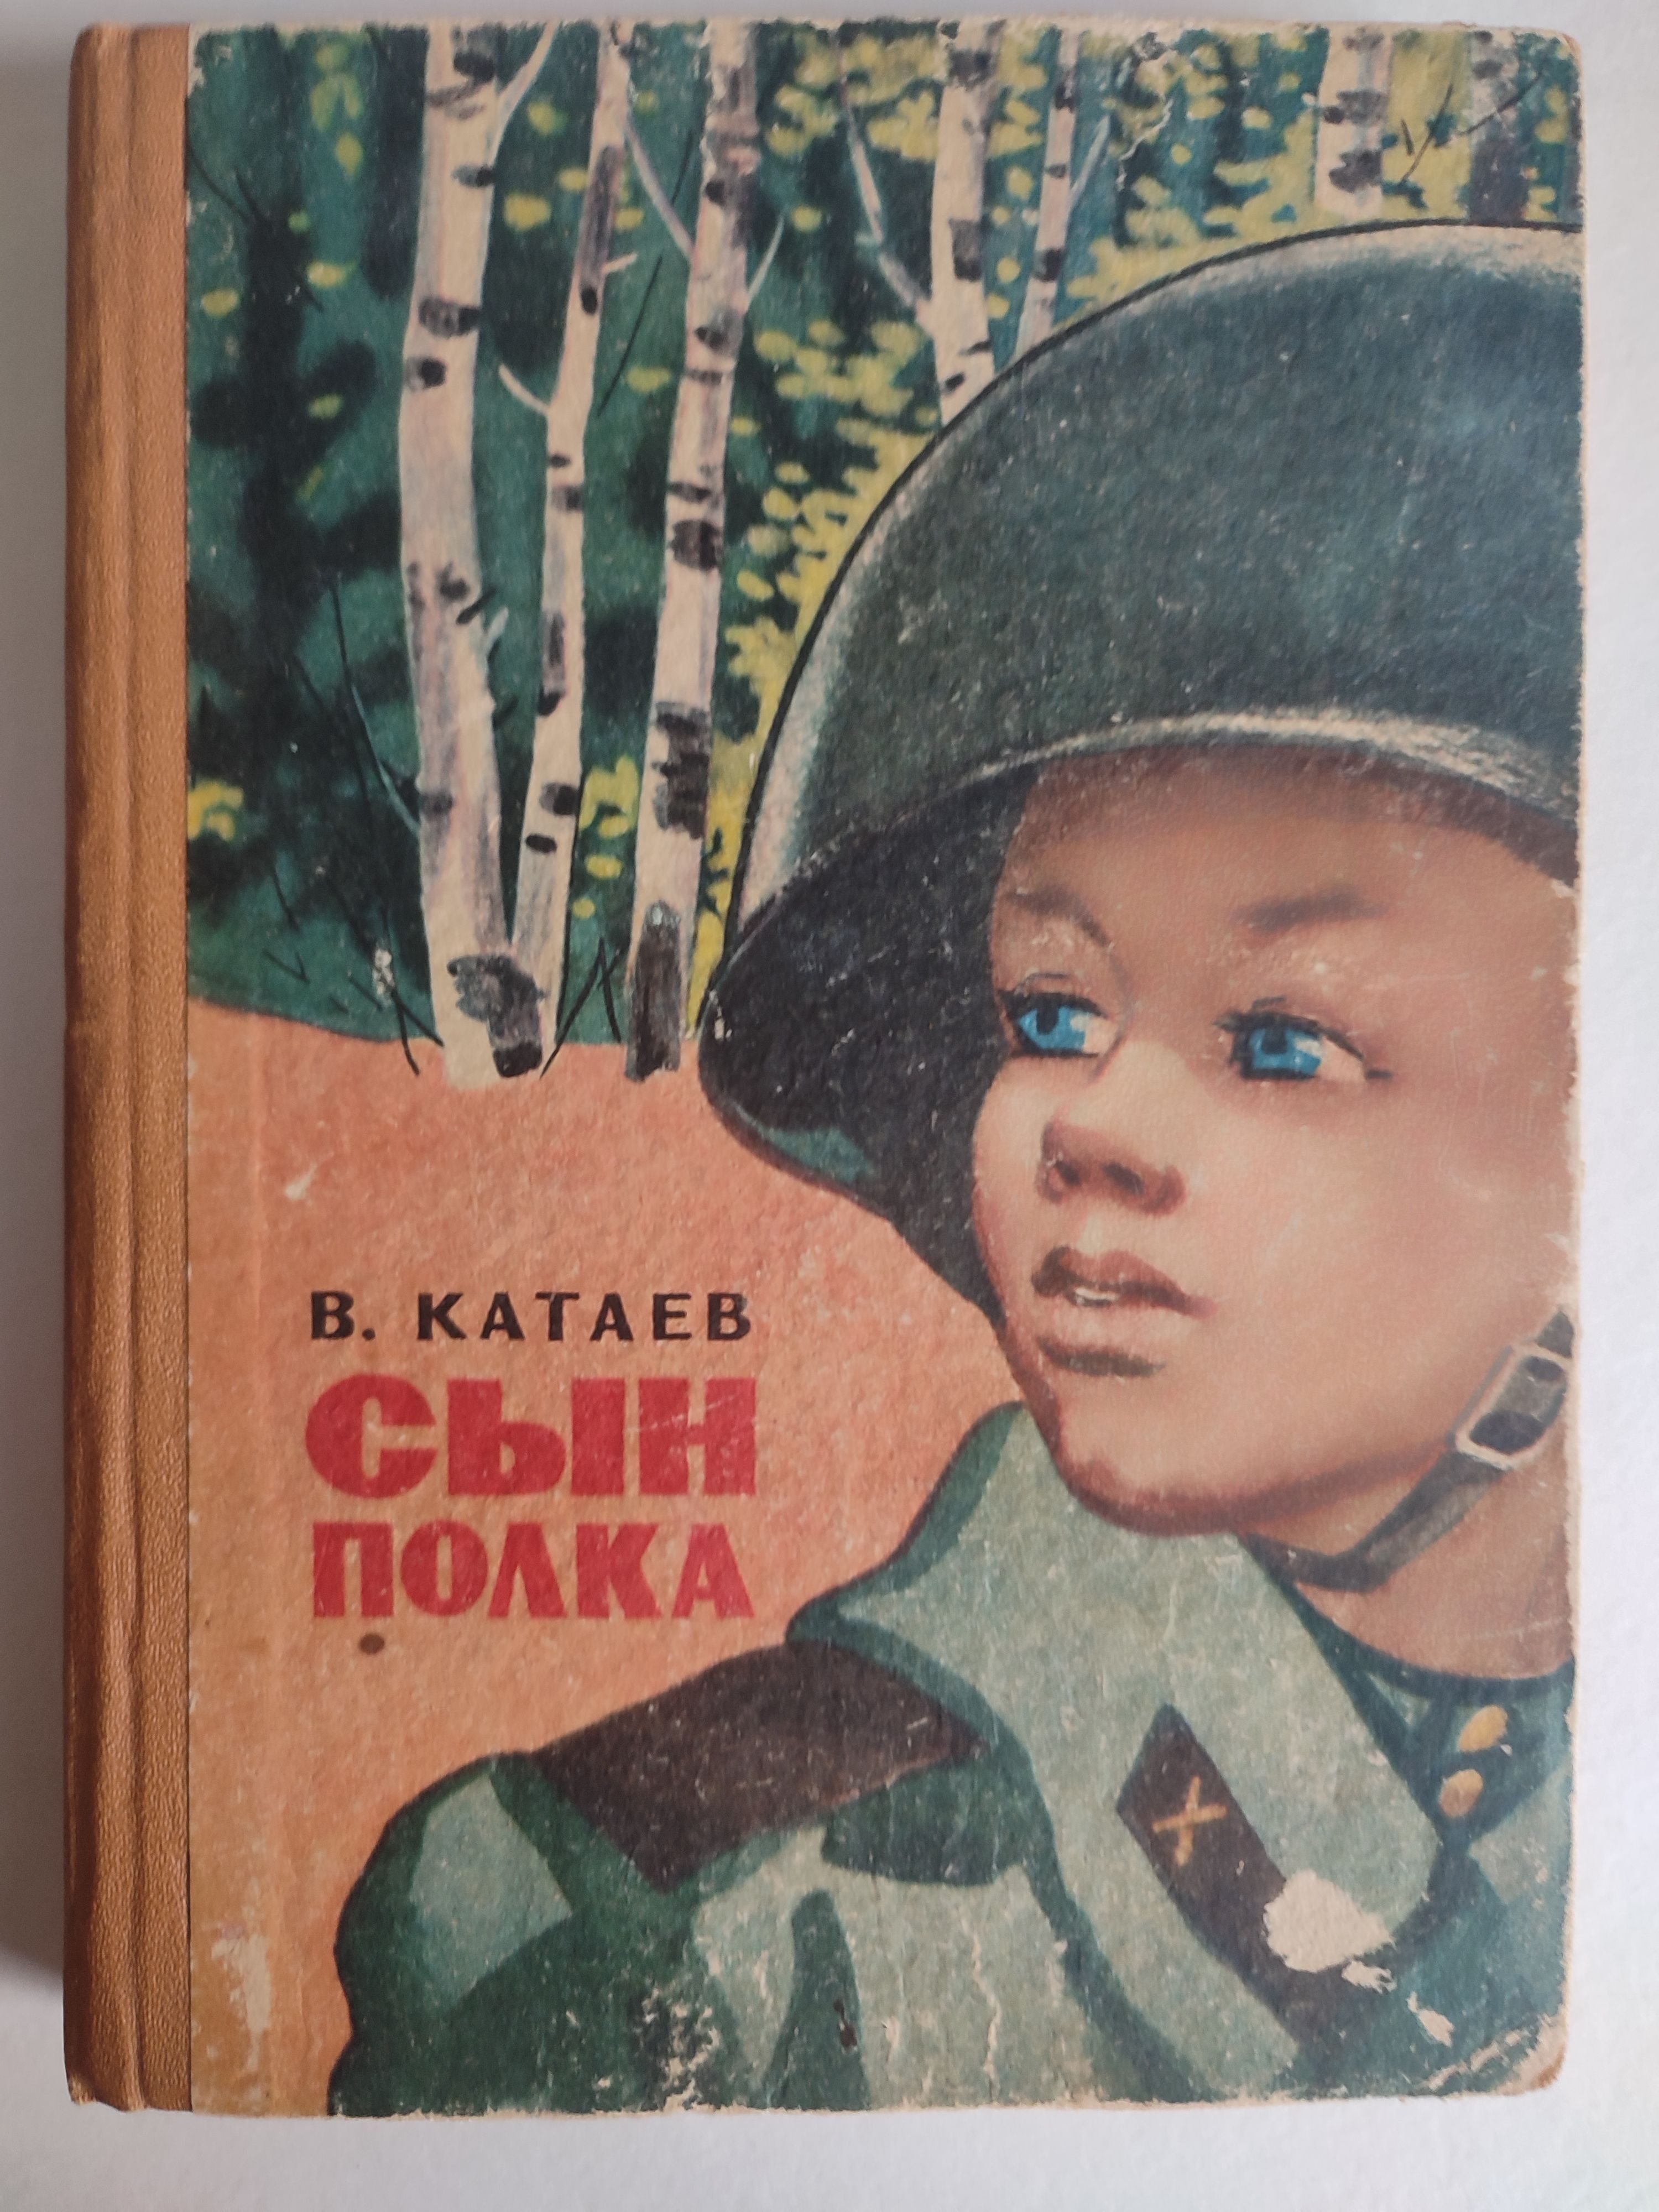 Название произведения сын полка. Катаев в. "сын полка повесть". Книга Катаева сын полка.